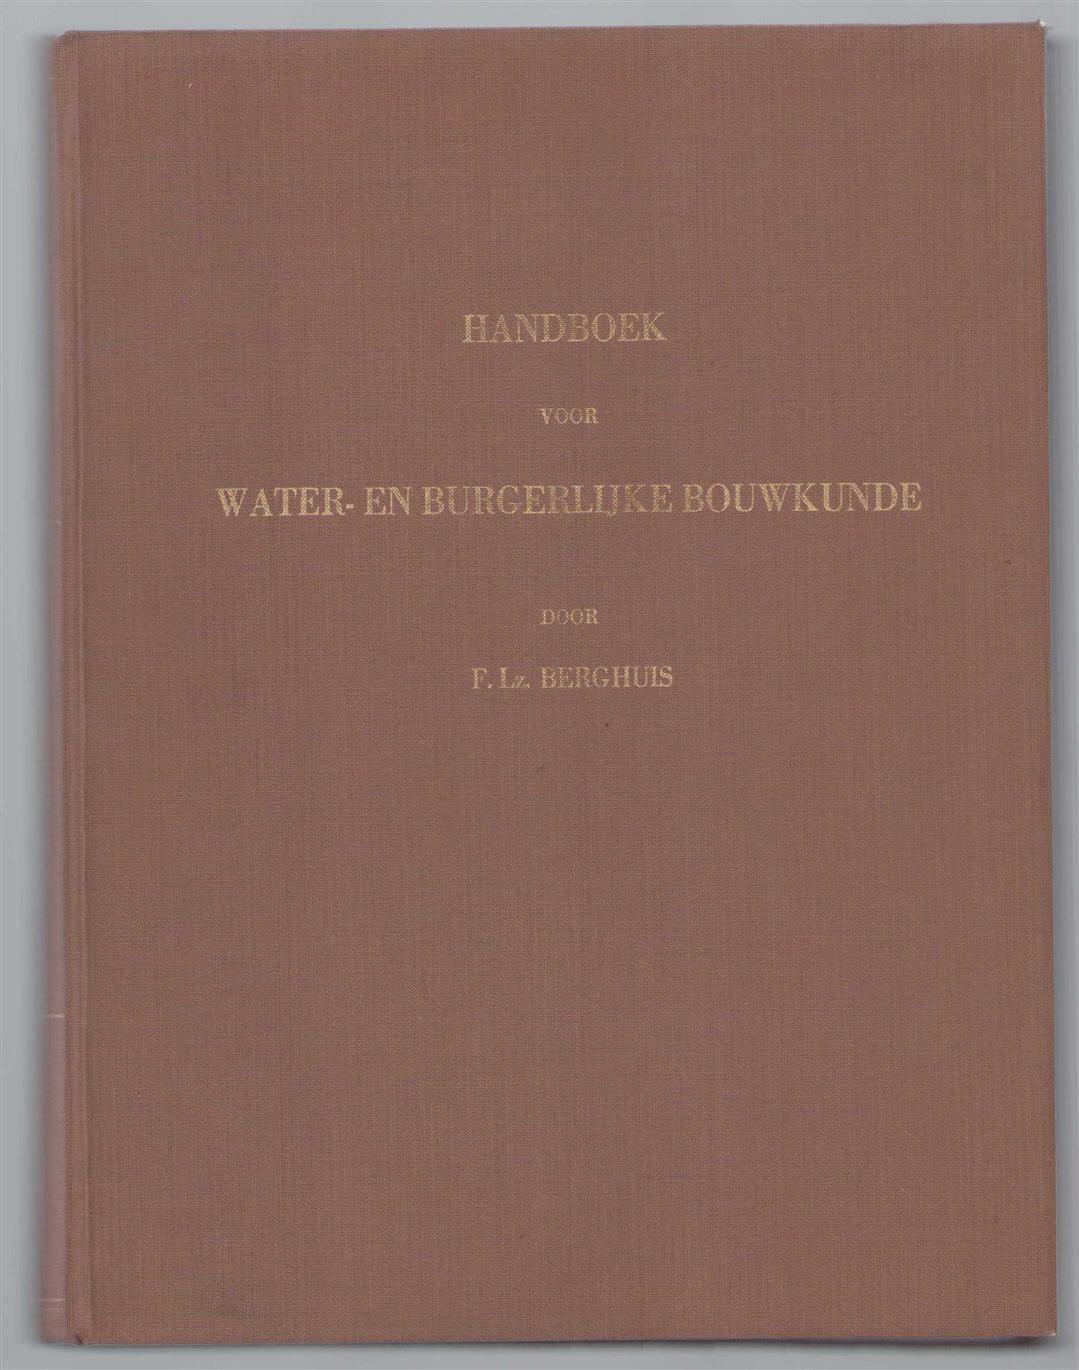 Berghuis, F.Lz. - Handboek voor water- en burgerlijke bouwkunde + constructin uit de burgerlijke bouwkunde (prachtige nieuwe band)